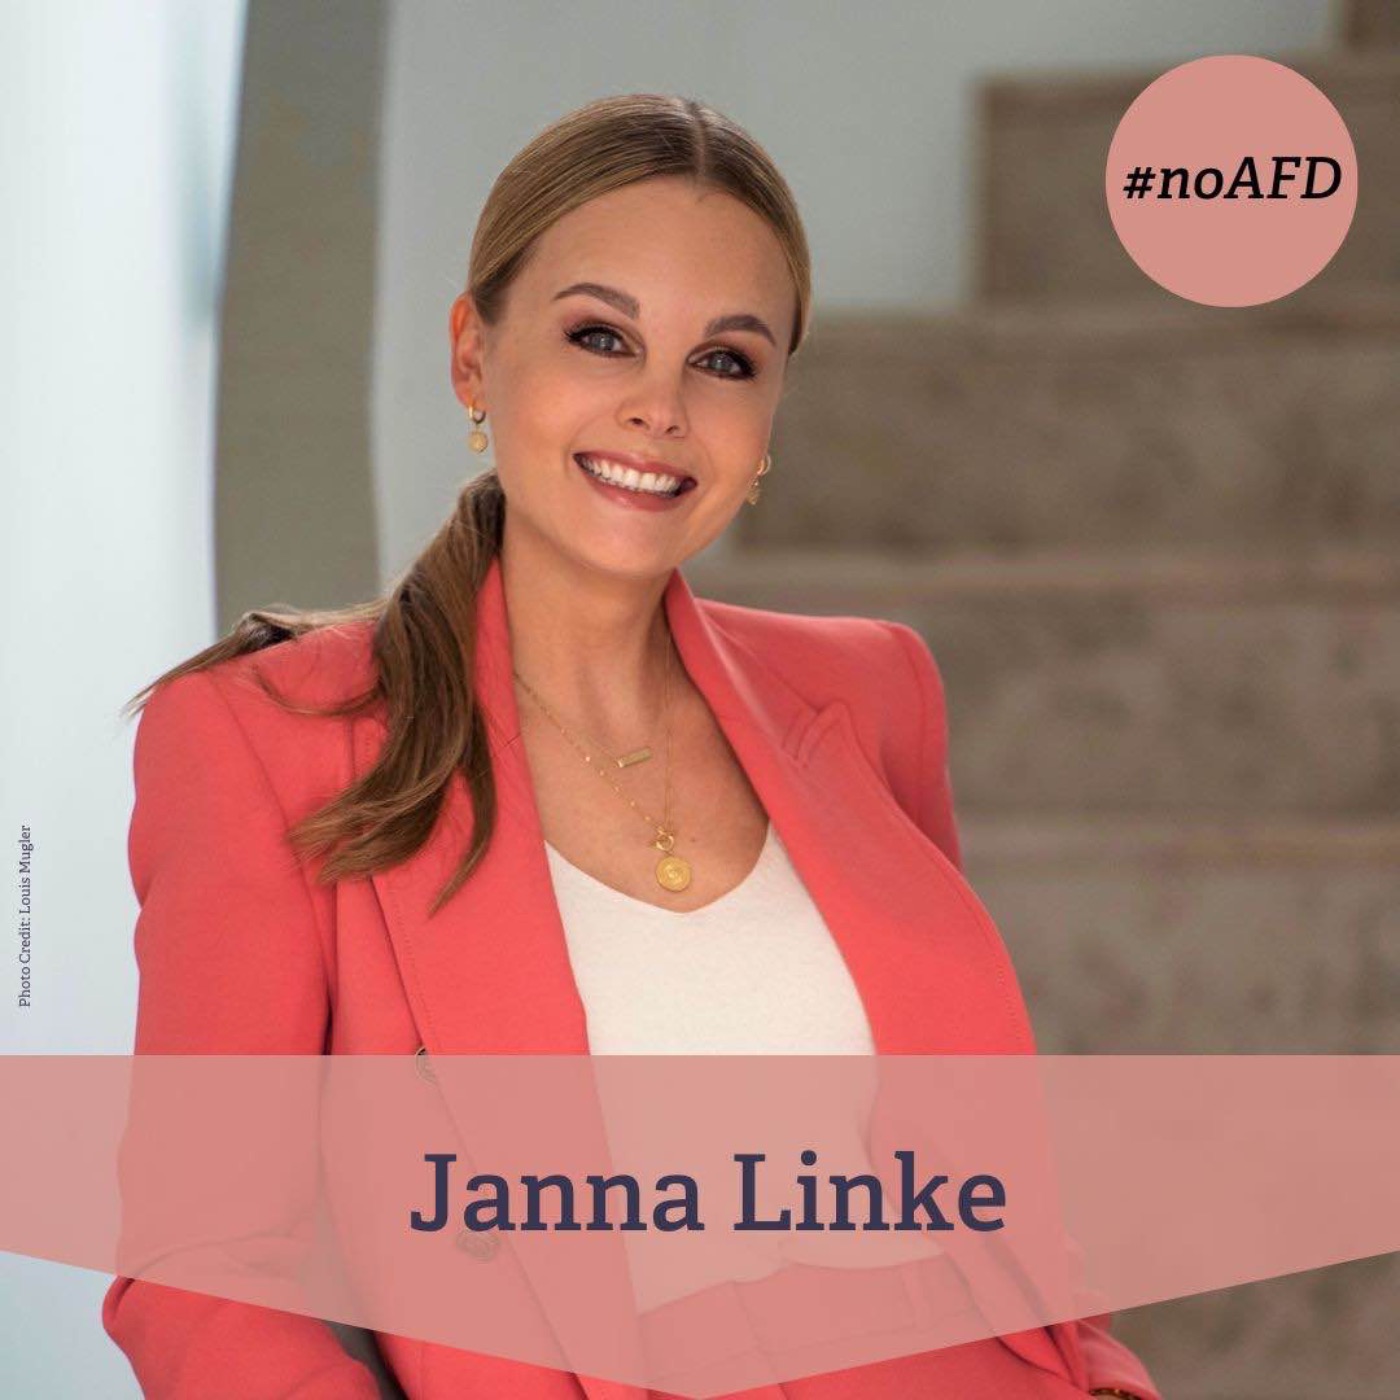 #218 Janna Linke - renommierte Journalistin, Moderatorin und Podcasterin